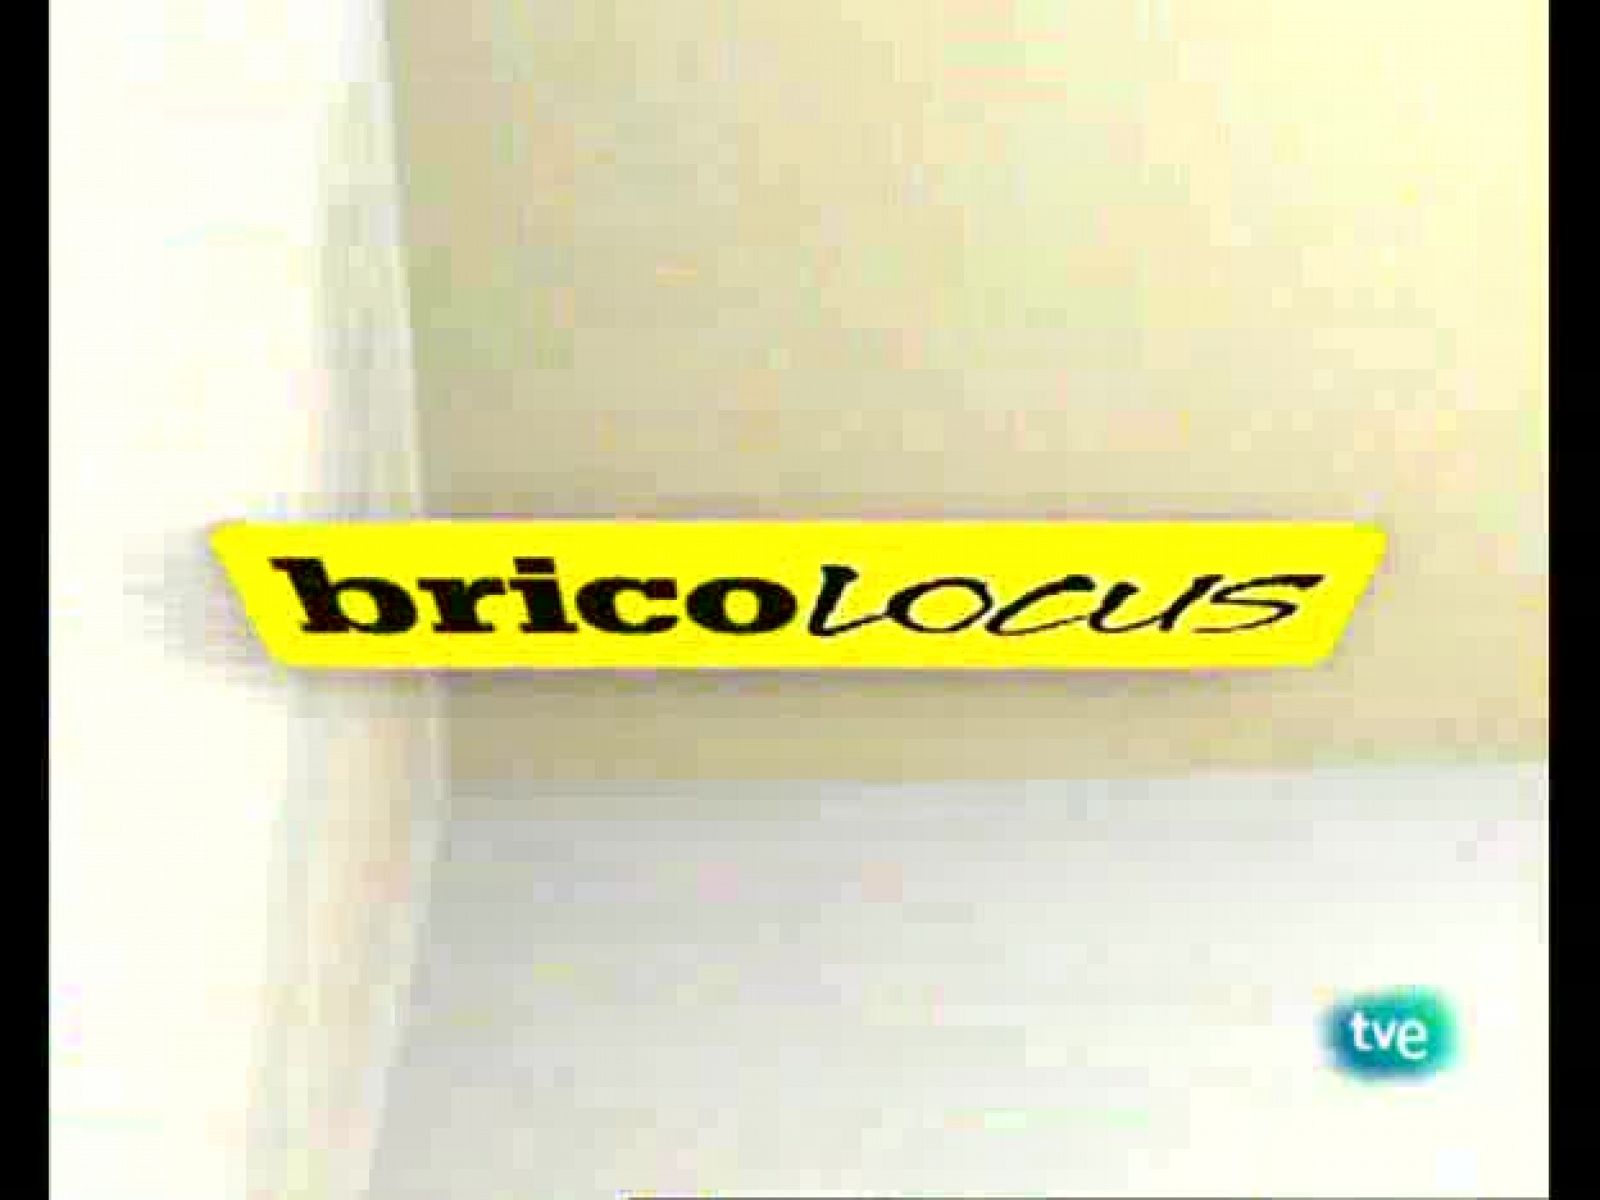 Bricolocus - 15/05/09